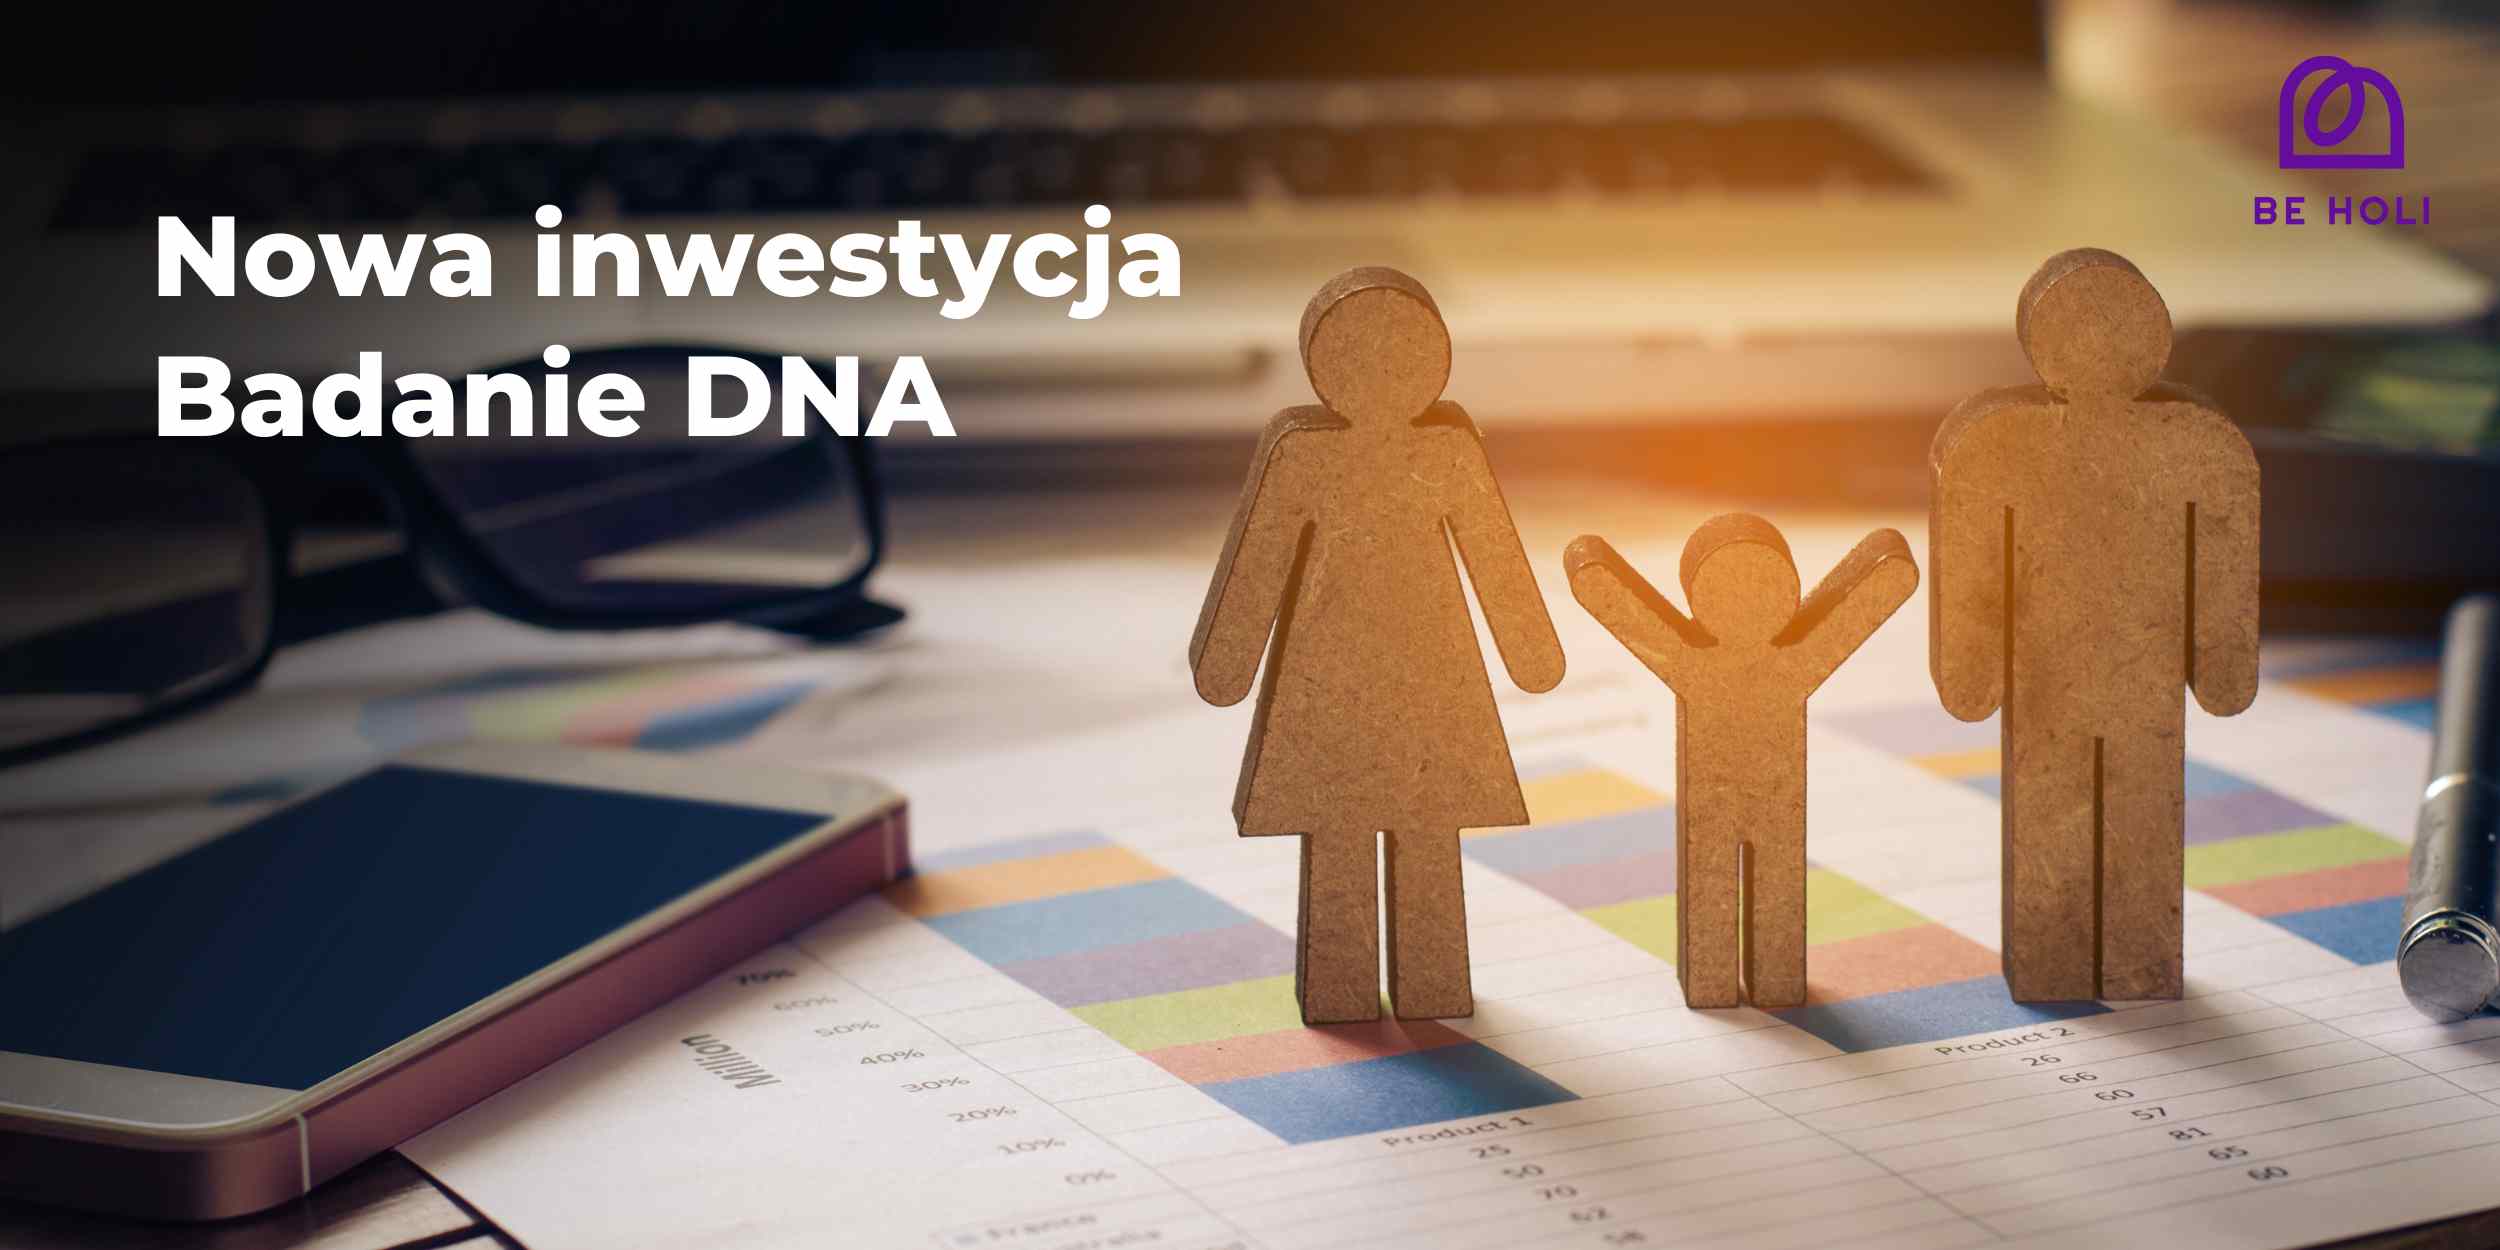 Nowa inwestycja - Badanie DNA